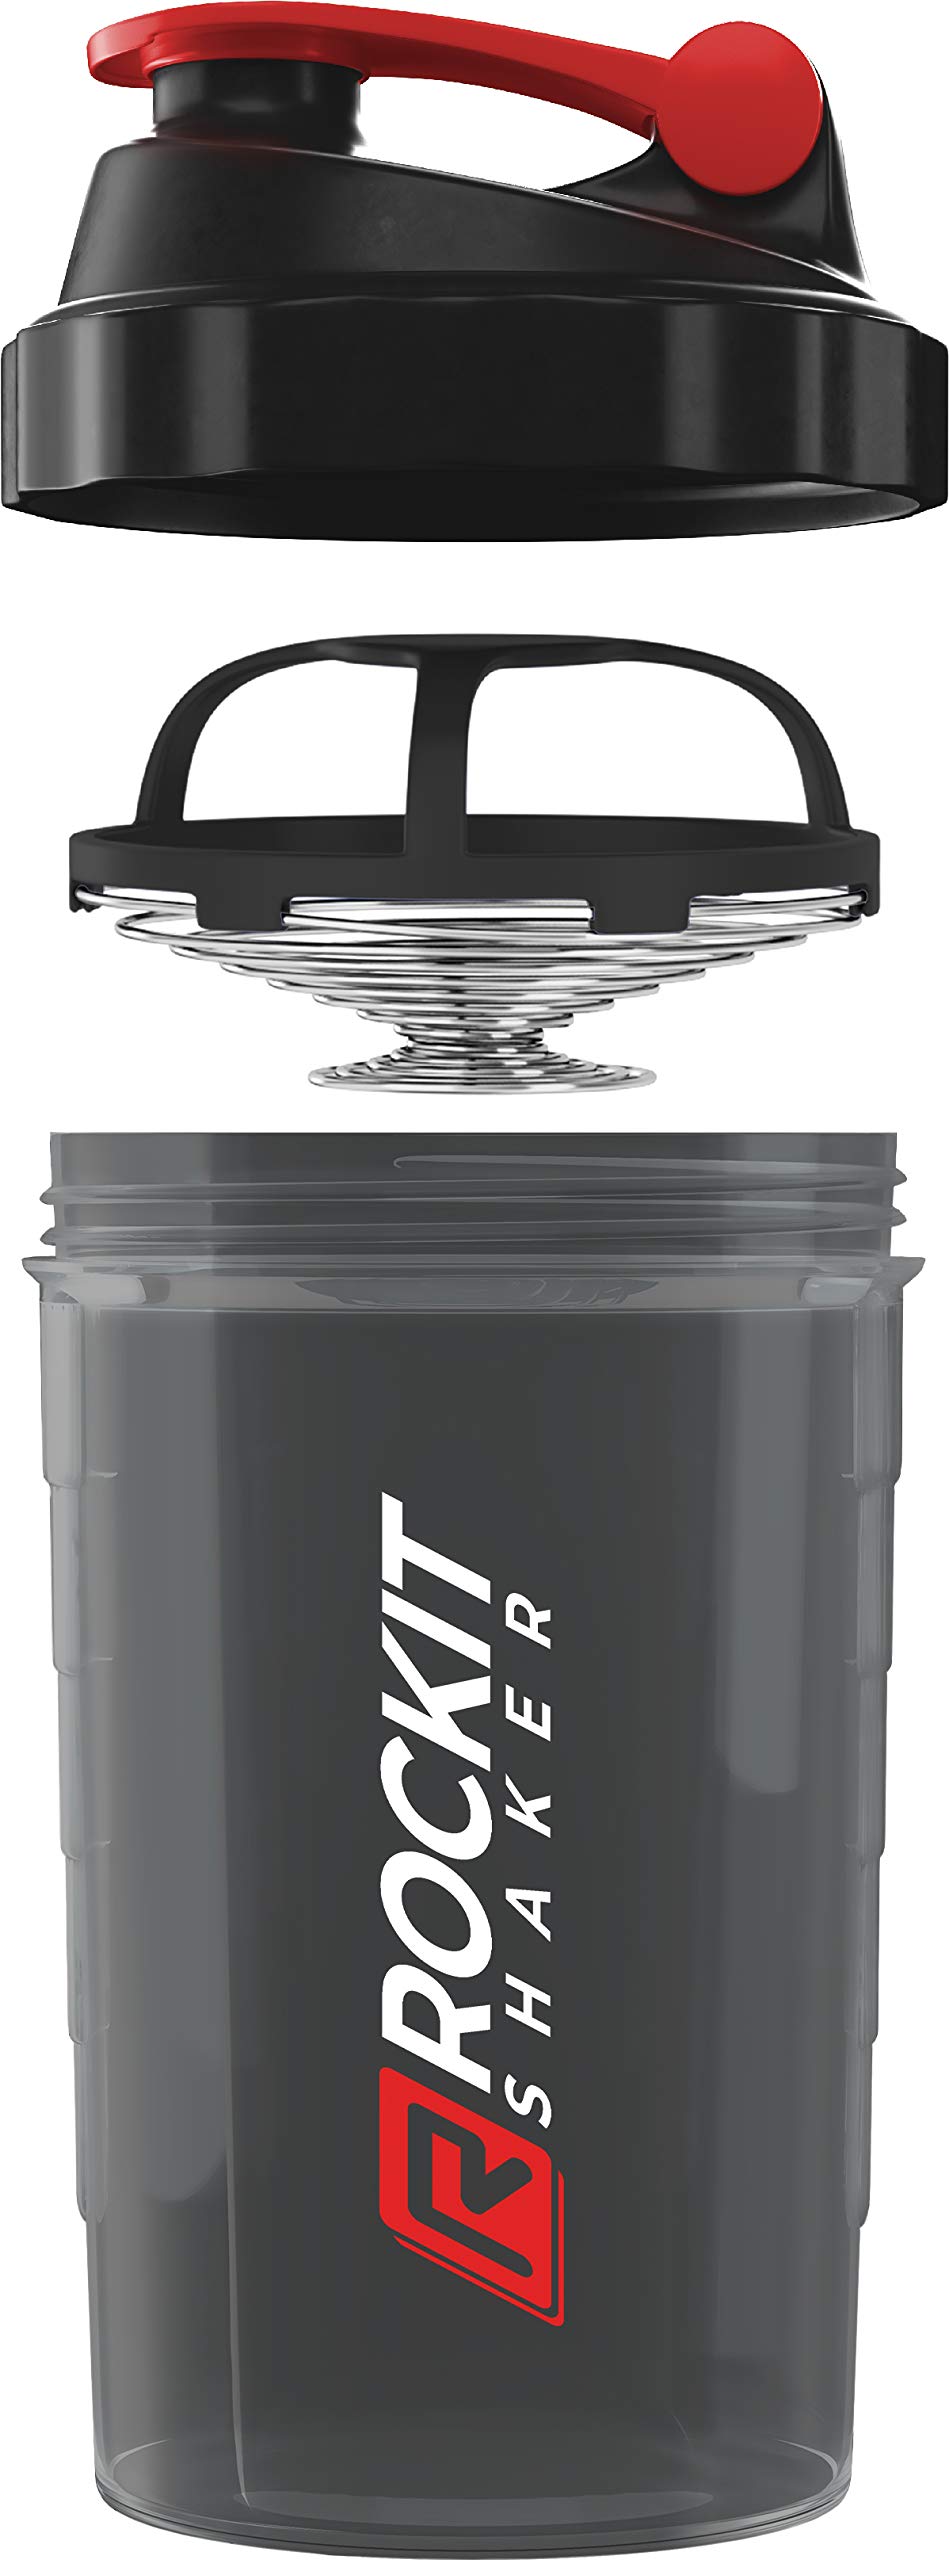 Haute Qualité ROCKITZ Premium Shaker Proteines 500ml - fonction de mélange avec filtre à infusion - pour des shakes fitness super crémeux, tasse à shake - Rouge | Noir GPtsVtXOl en France Online